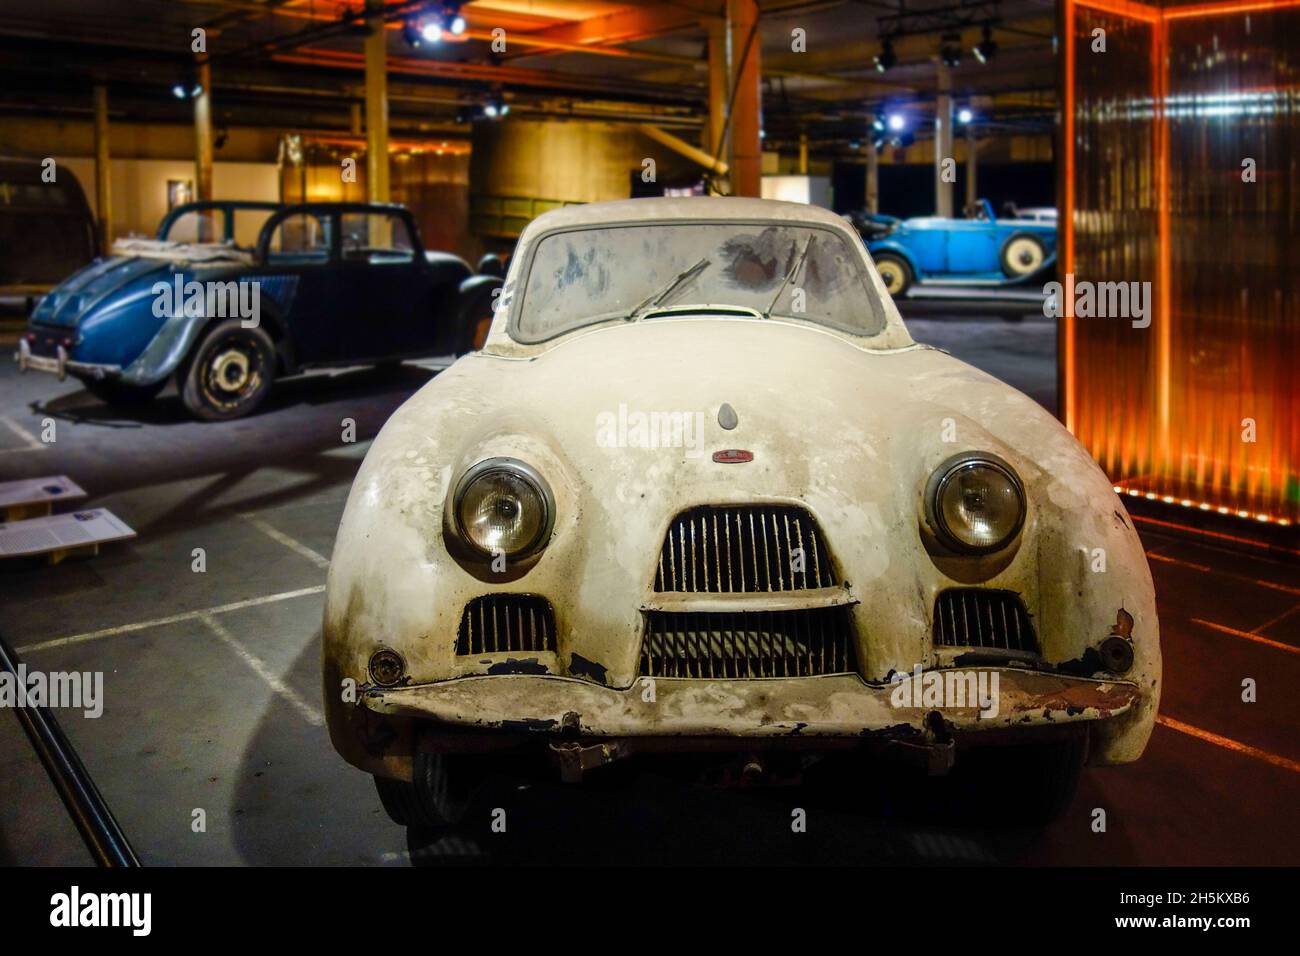 Allard oxidado y polvoriento P2 Monte Carlo 1953, berlina de 2 puertas coche clásico / oldtimer de Allard Motor Company en mal estado listo para ser restaurado en garaje Foto de stock